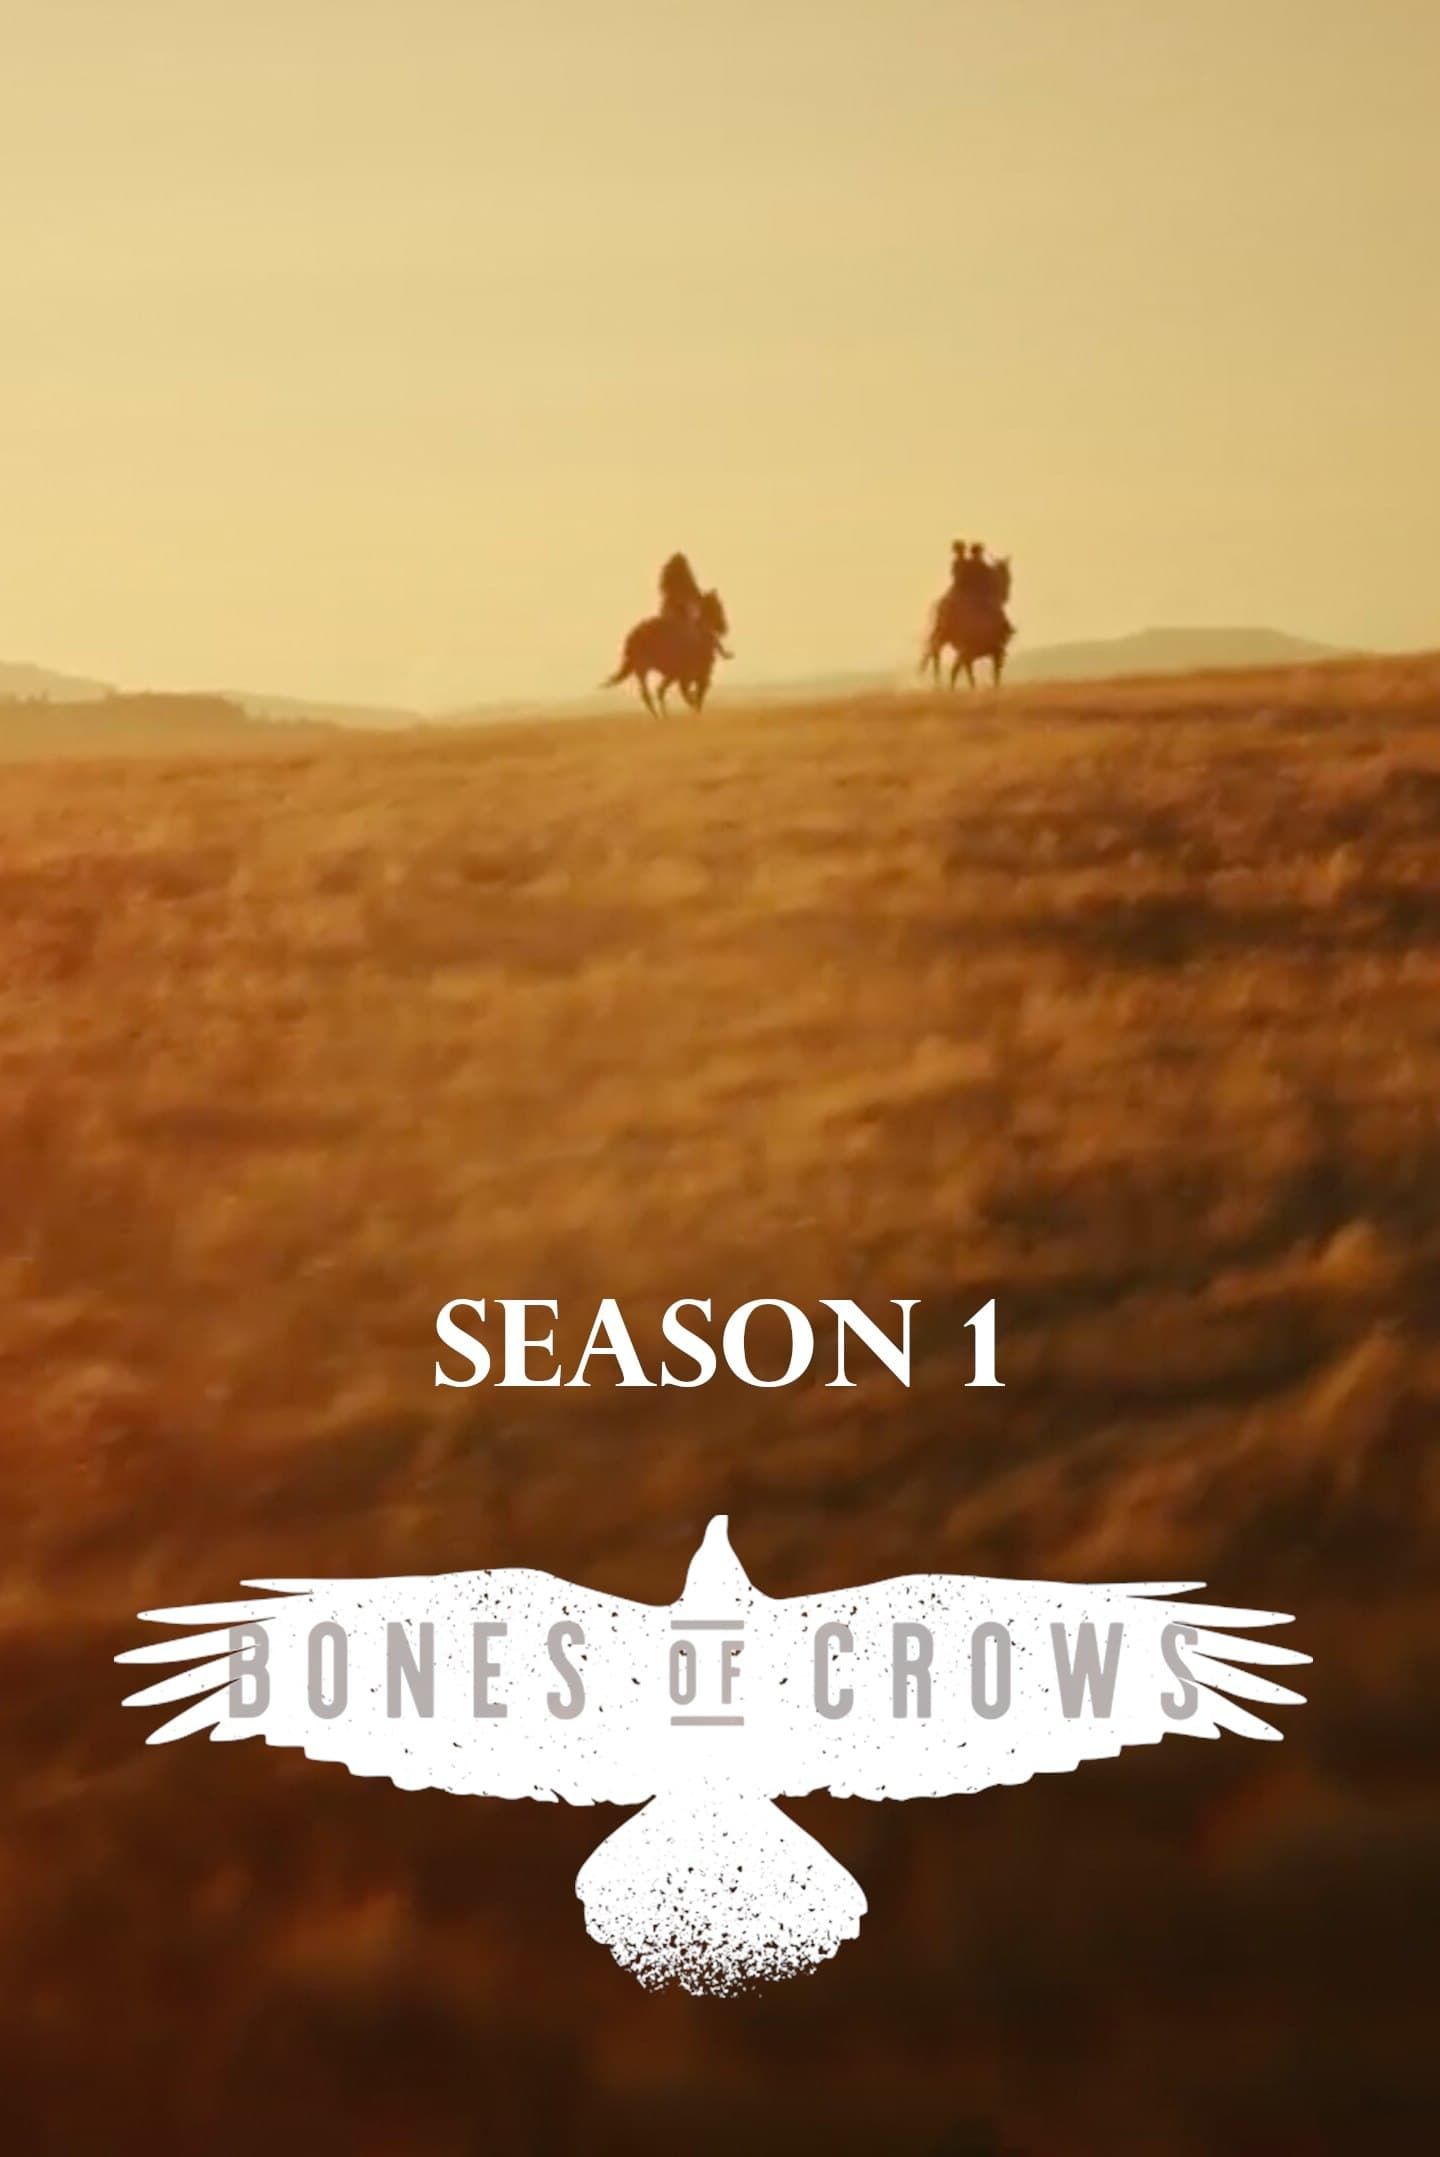 TV Series — Bones of Crows